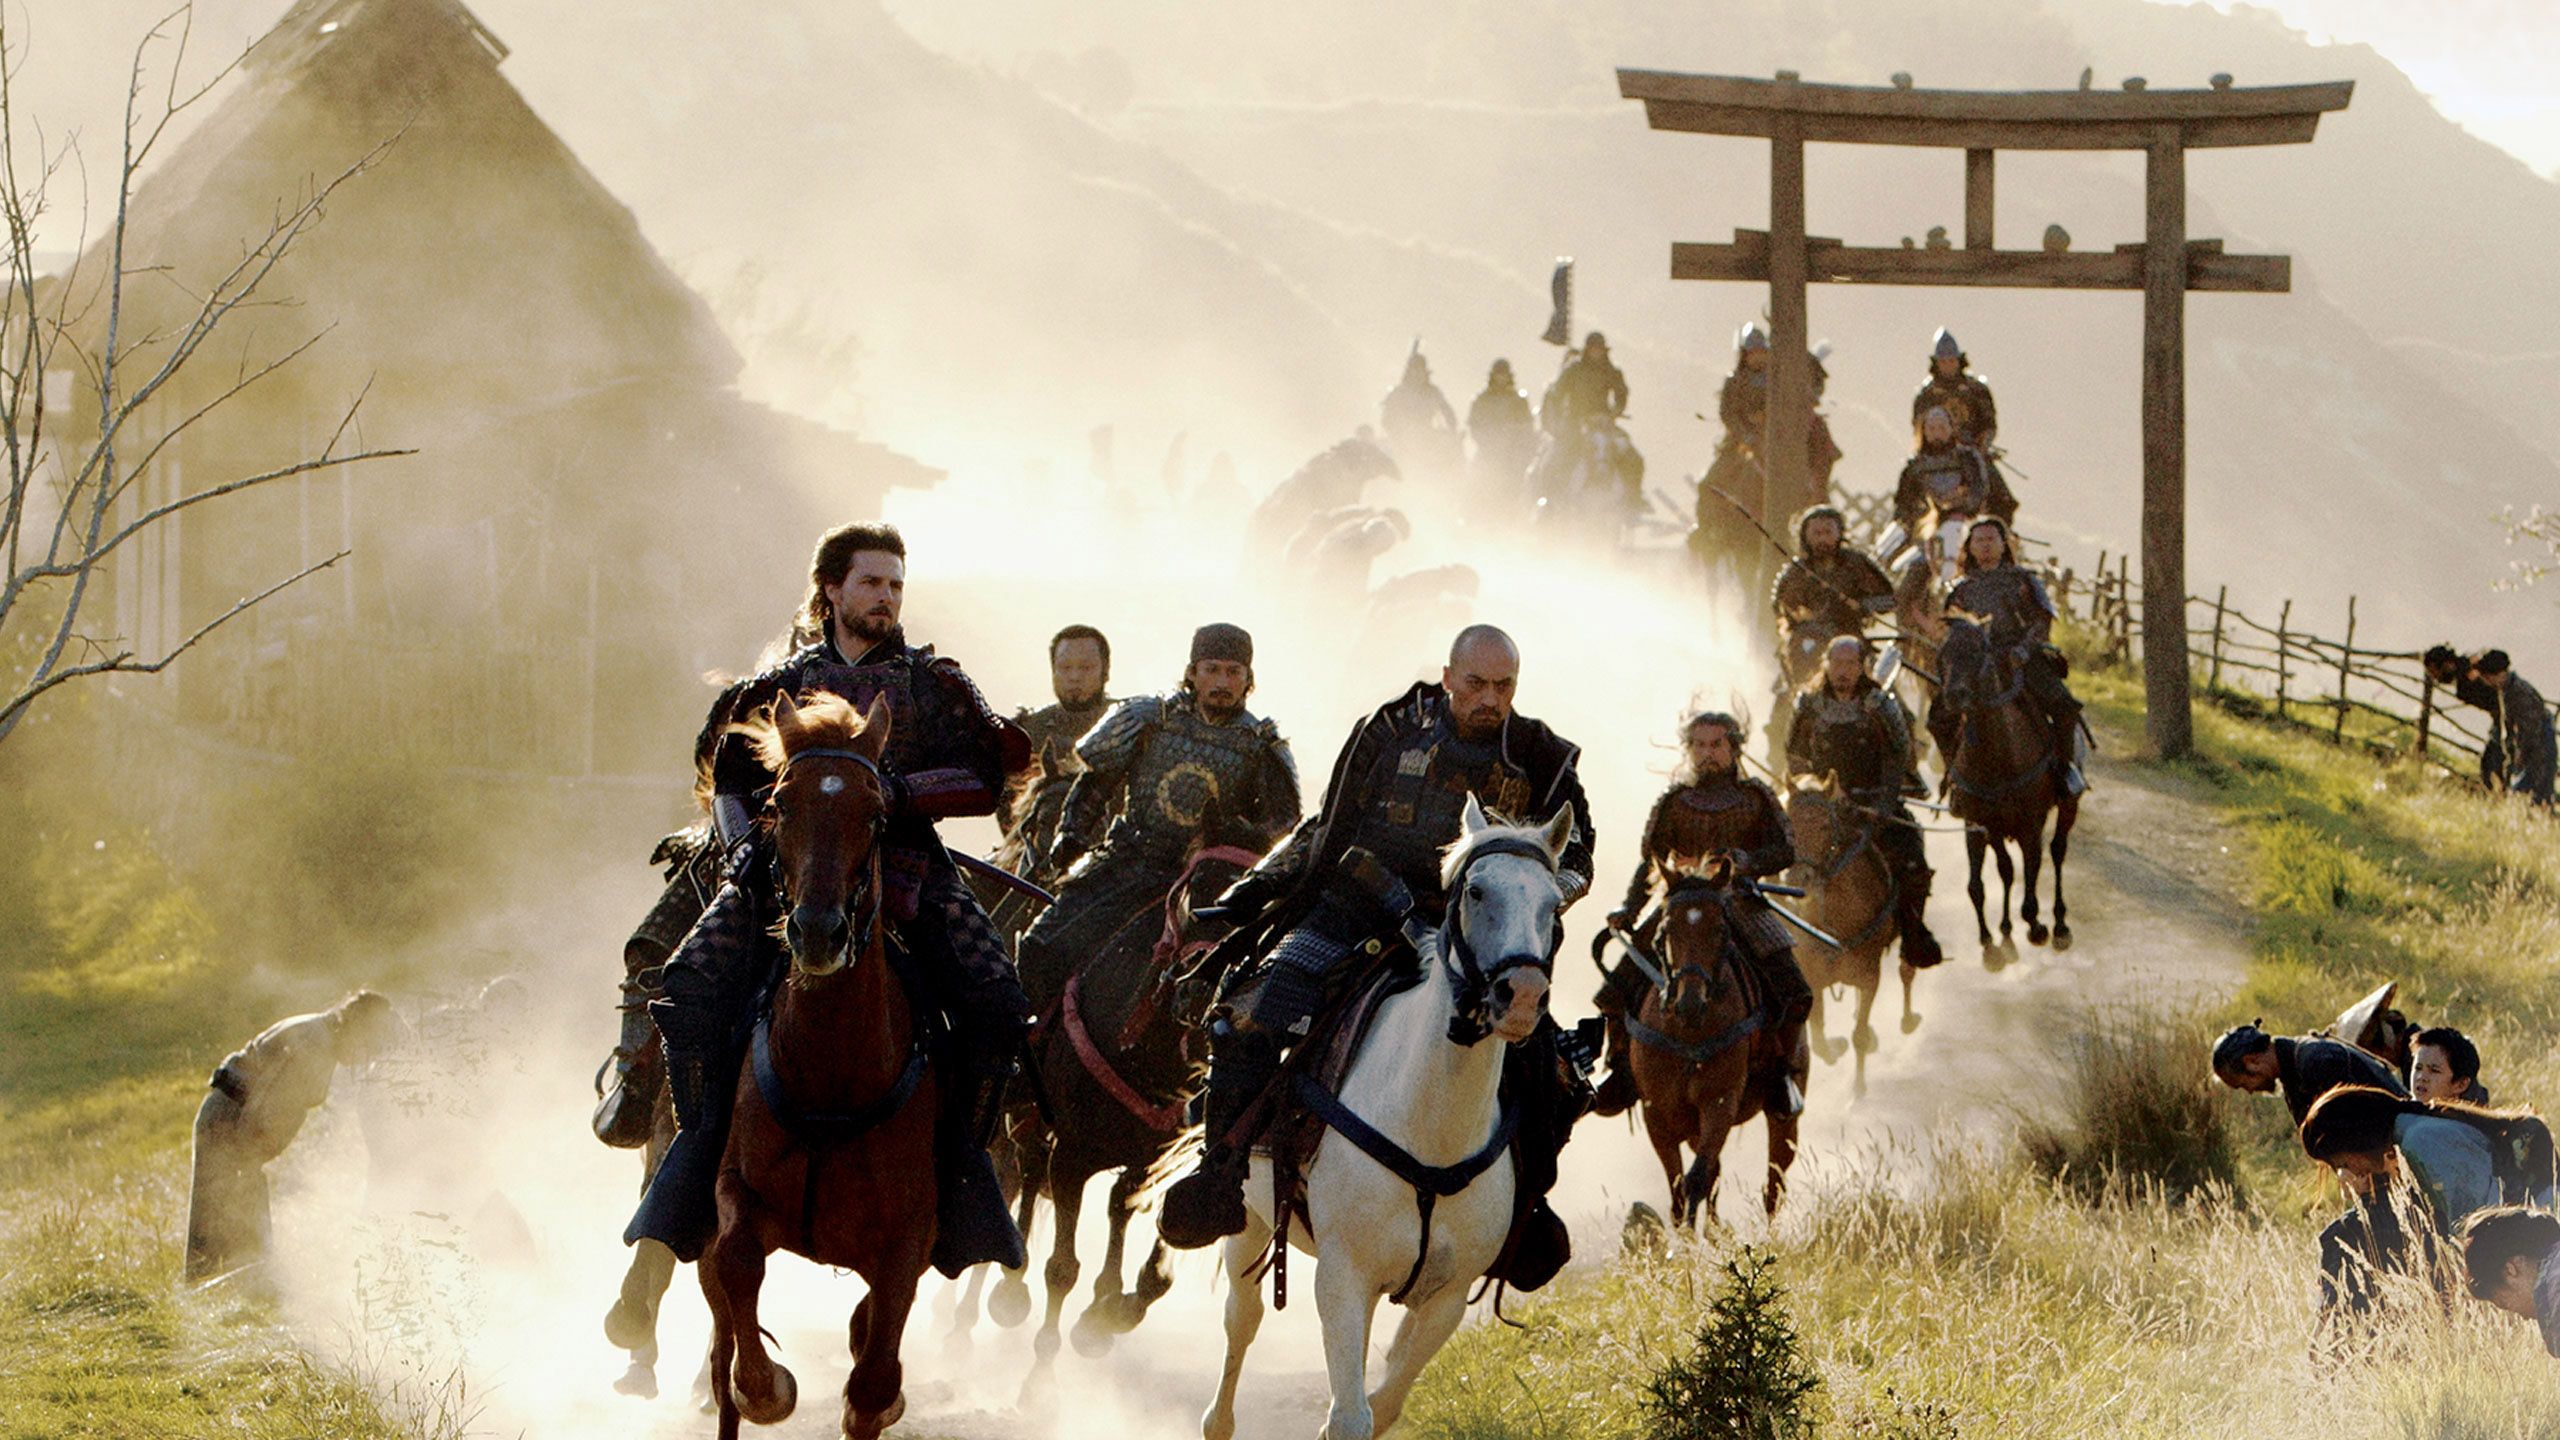 The Last Samurai | Full Movie | Movies Anywhere